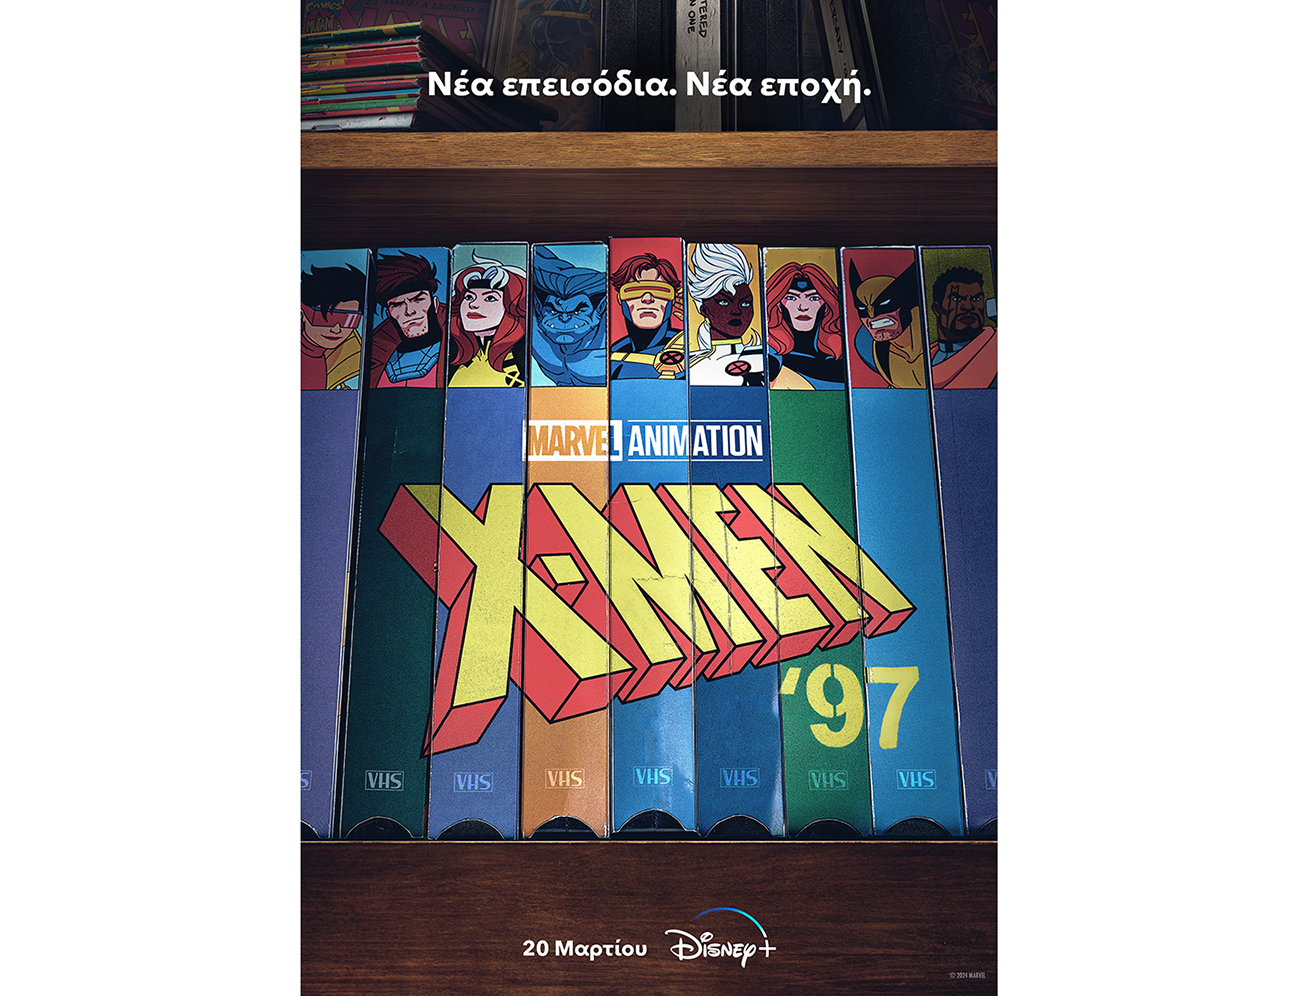 Η νέα σειρά «X-Men ’97» από τις 20 Μαρτίου αποκλειστικά στο Disney+